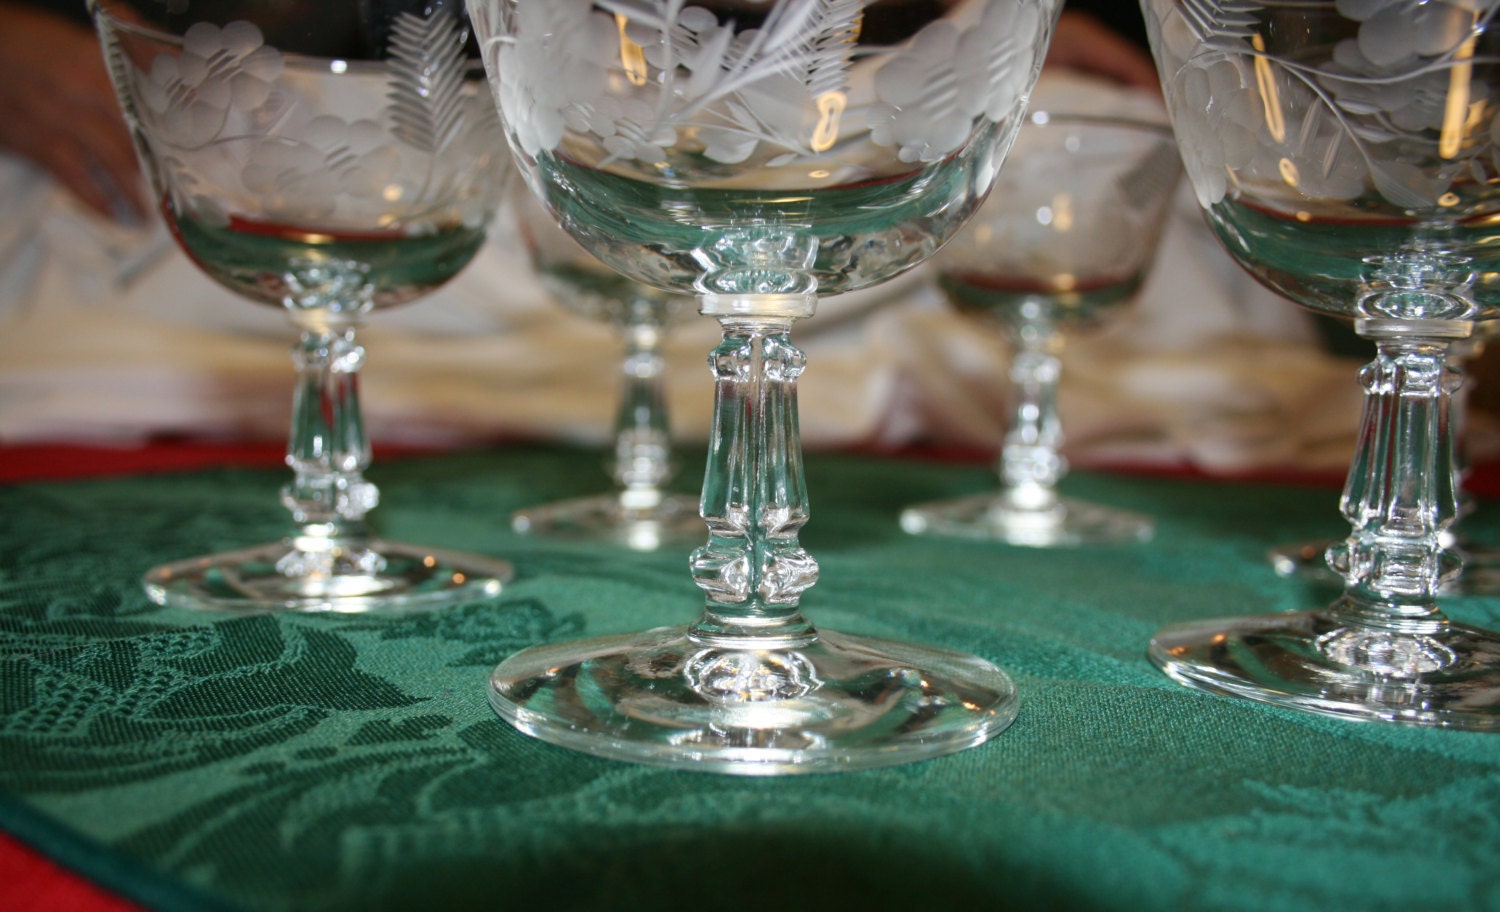 6 Vintage Crystal 5oz Champagne Flutes - Vintage Barware - Retro Barware